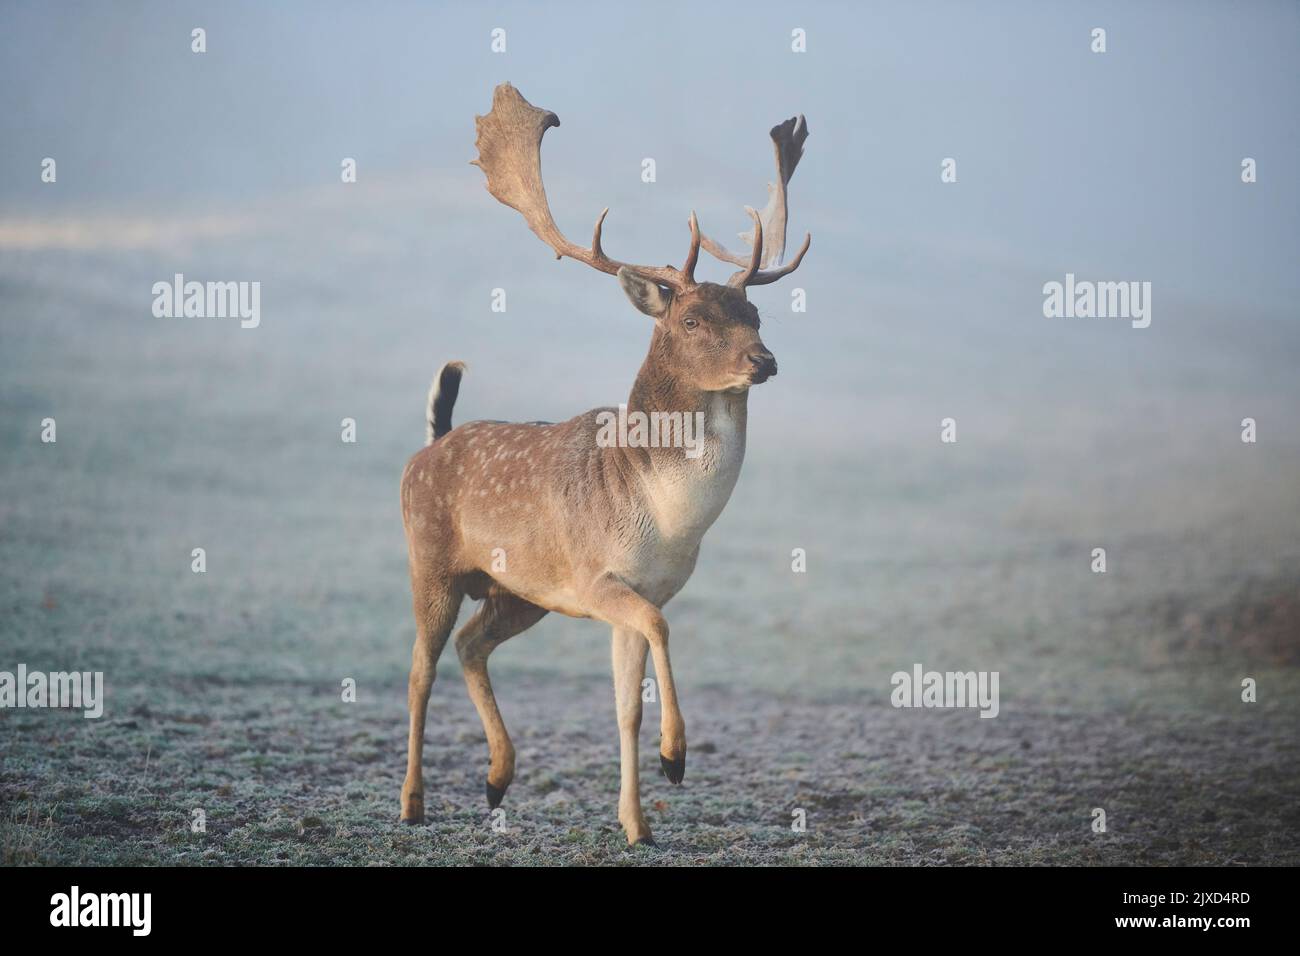 Cerf en jachère (Cervus dama dama). Buck marchant sur une prairie glacée pendant le rout en automne. Bavarian Forest, Bavière, Allemagne Banque D'Images